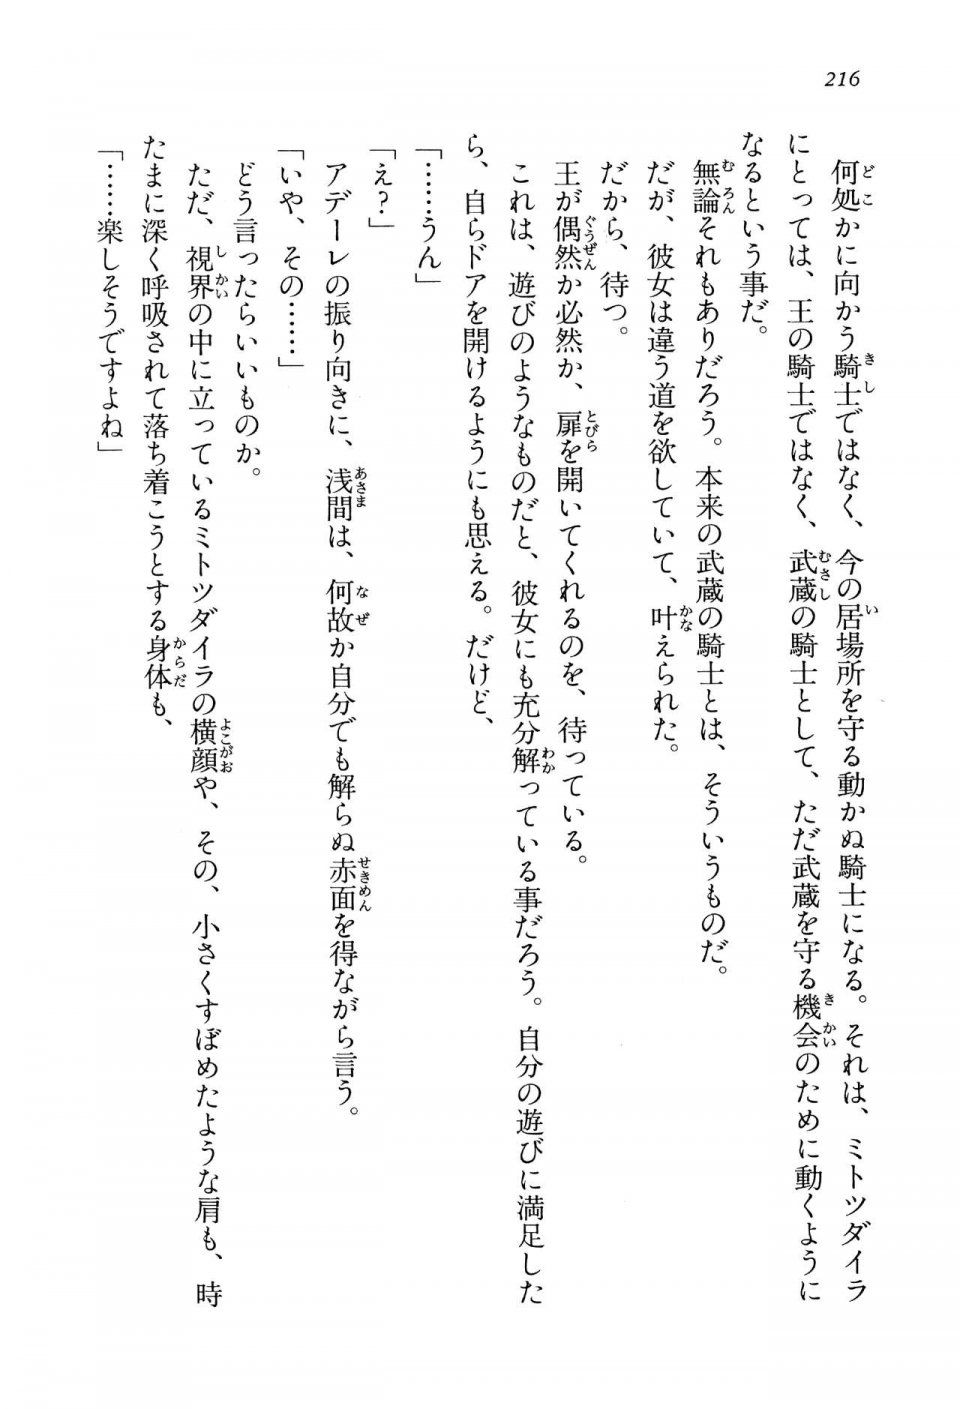 Kyoukai Senjou no Horizon LN Vol 14(6B) - Photo #216